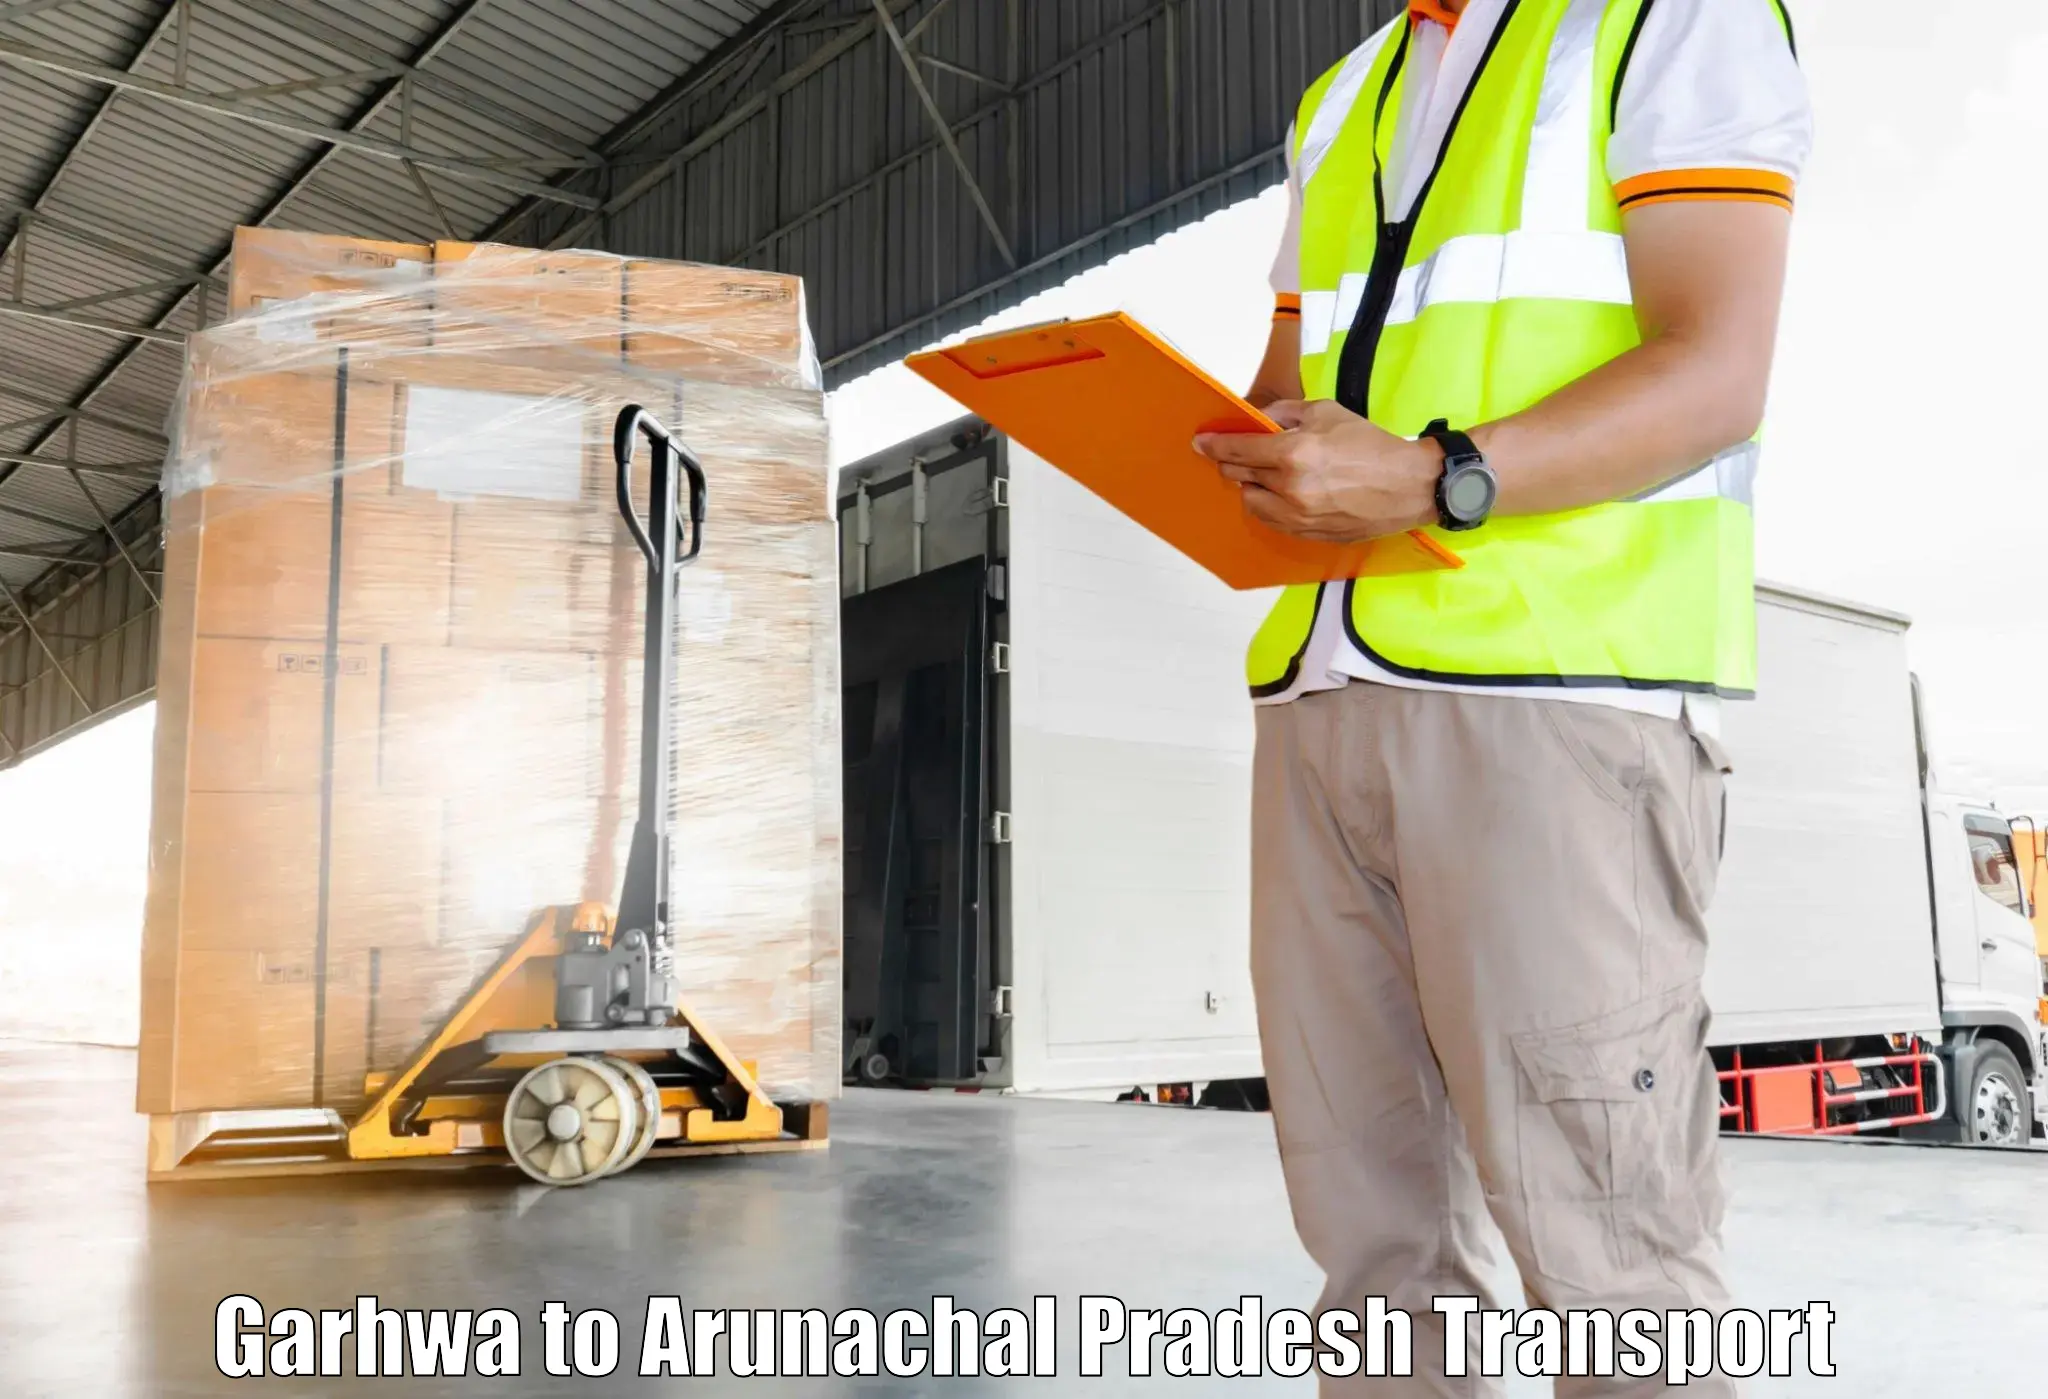 Commercial transport service in Garhwa to Arunachal Pradesh